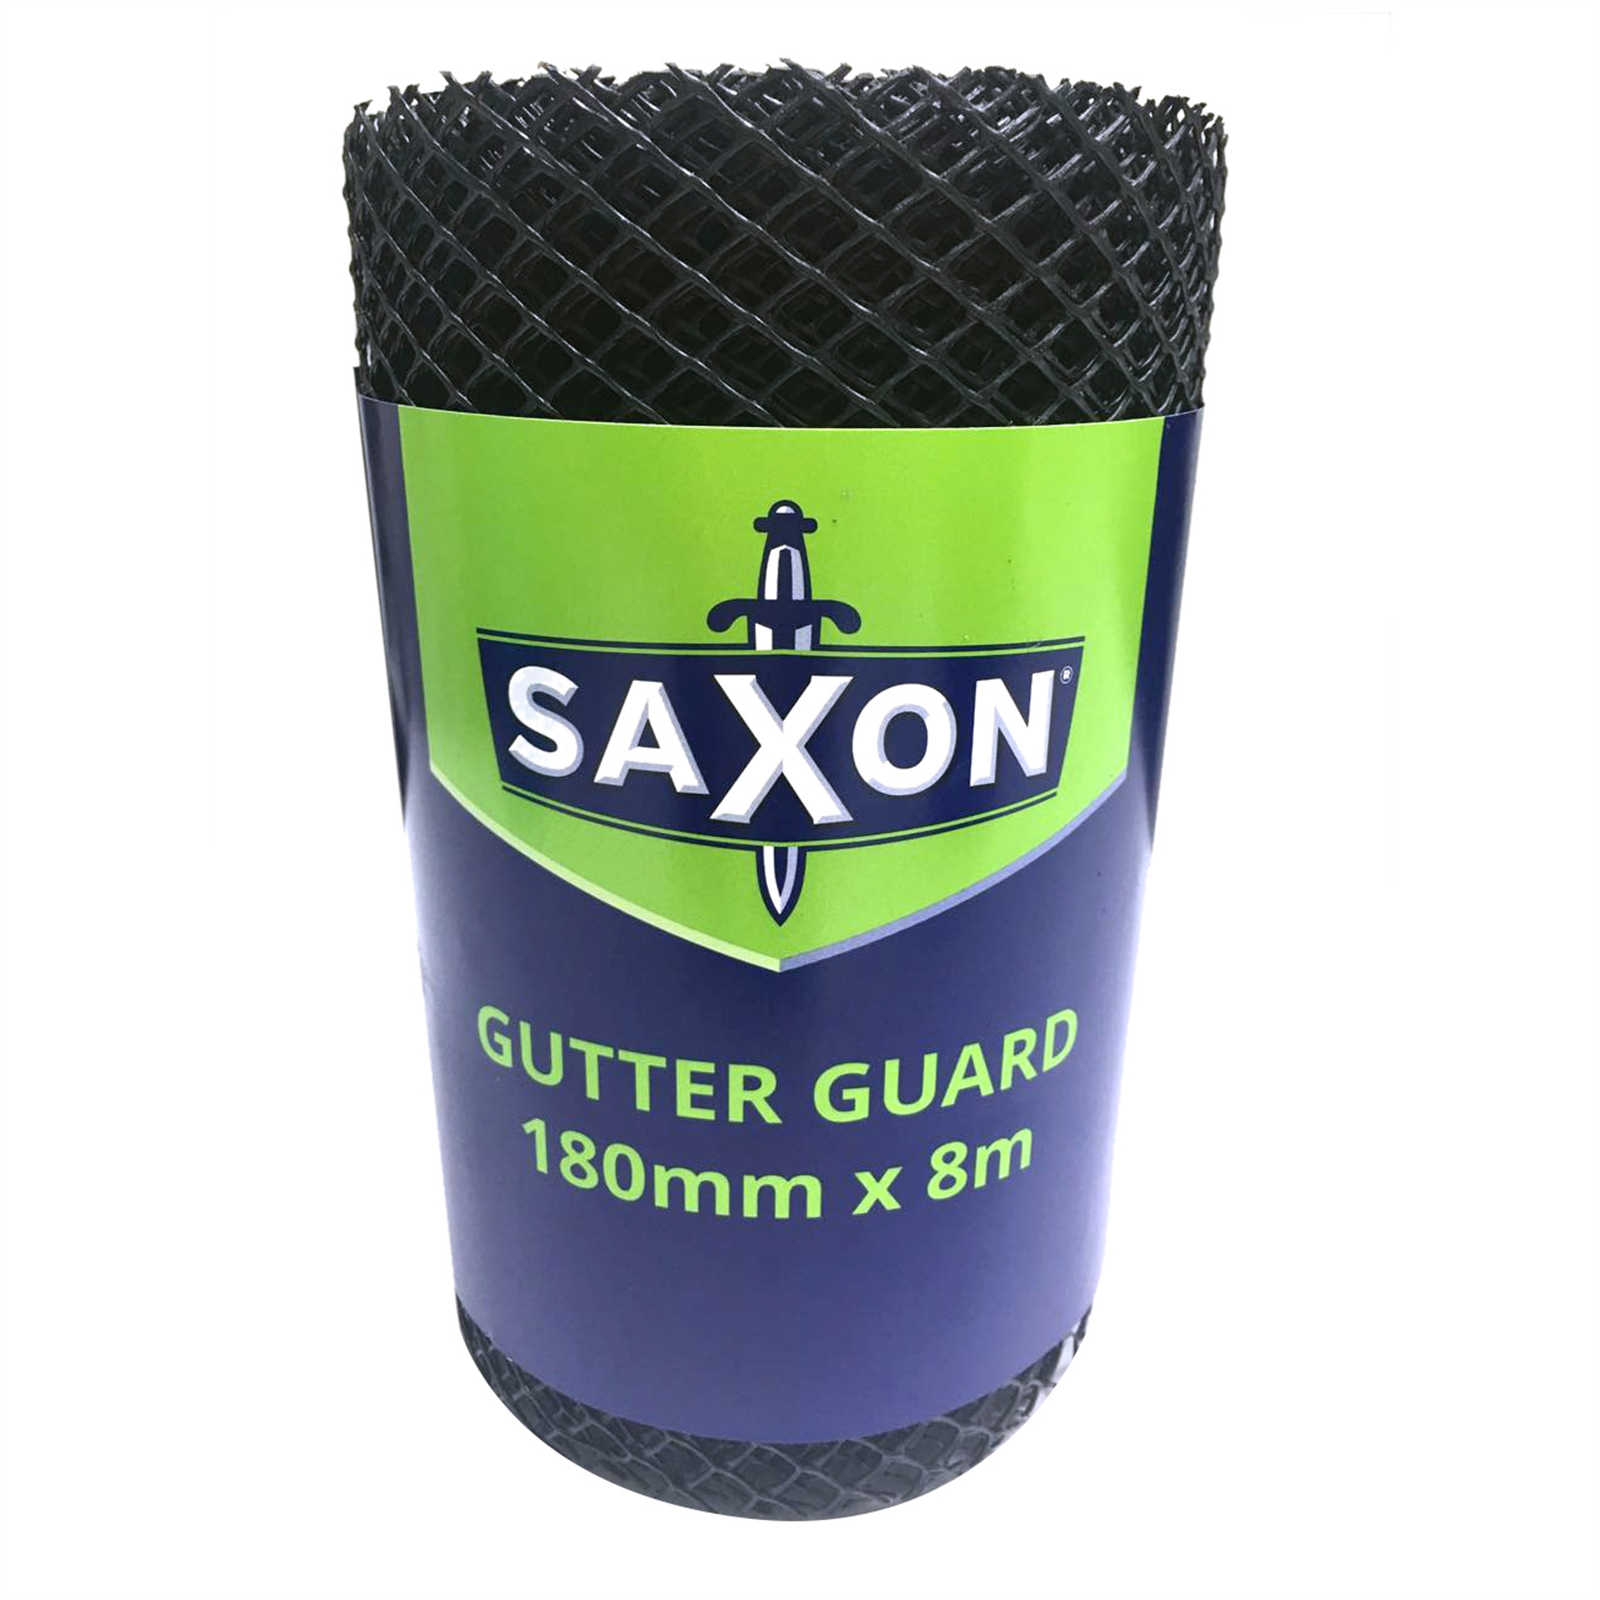 Saxon 180mm x 8.0m Black Plastic Gutter Guard